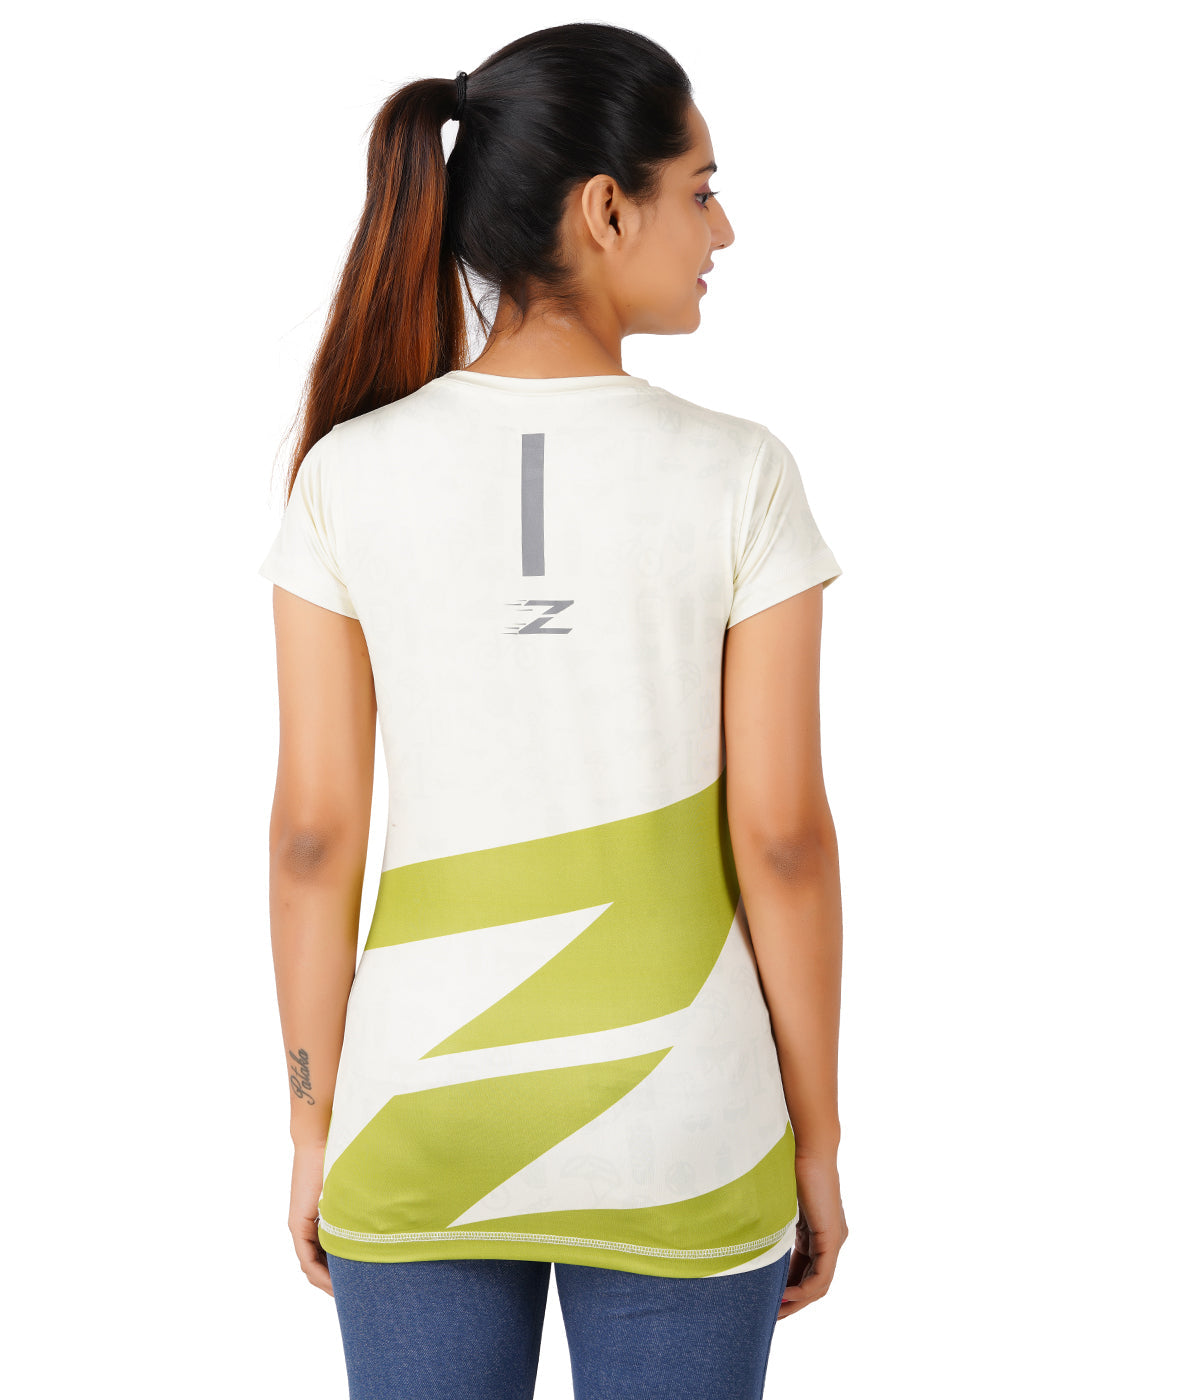 Zakpro Sports Women's Cycling T-Shirt (Z-Series)